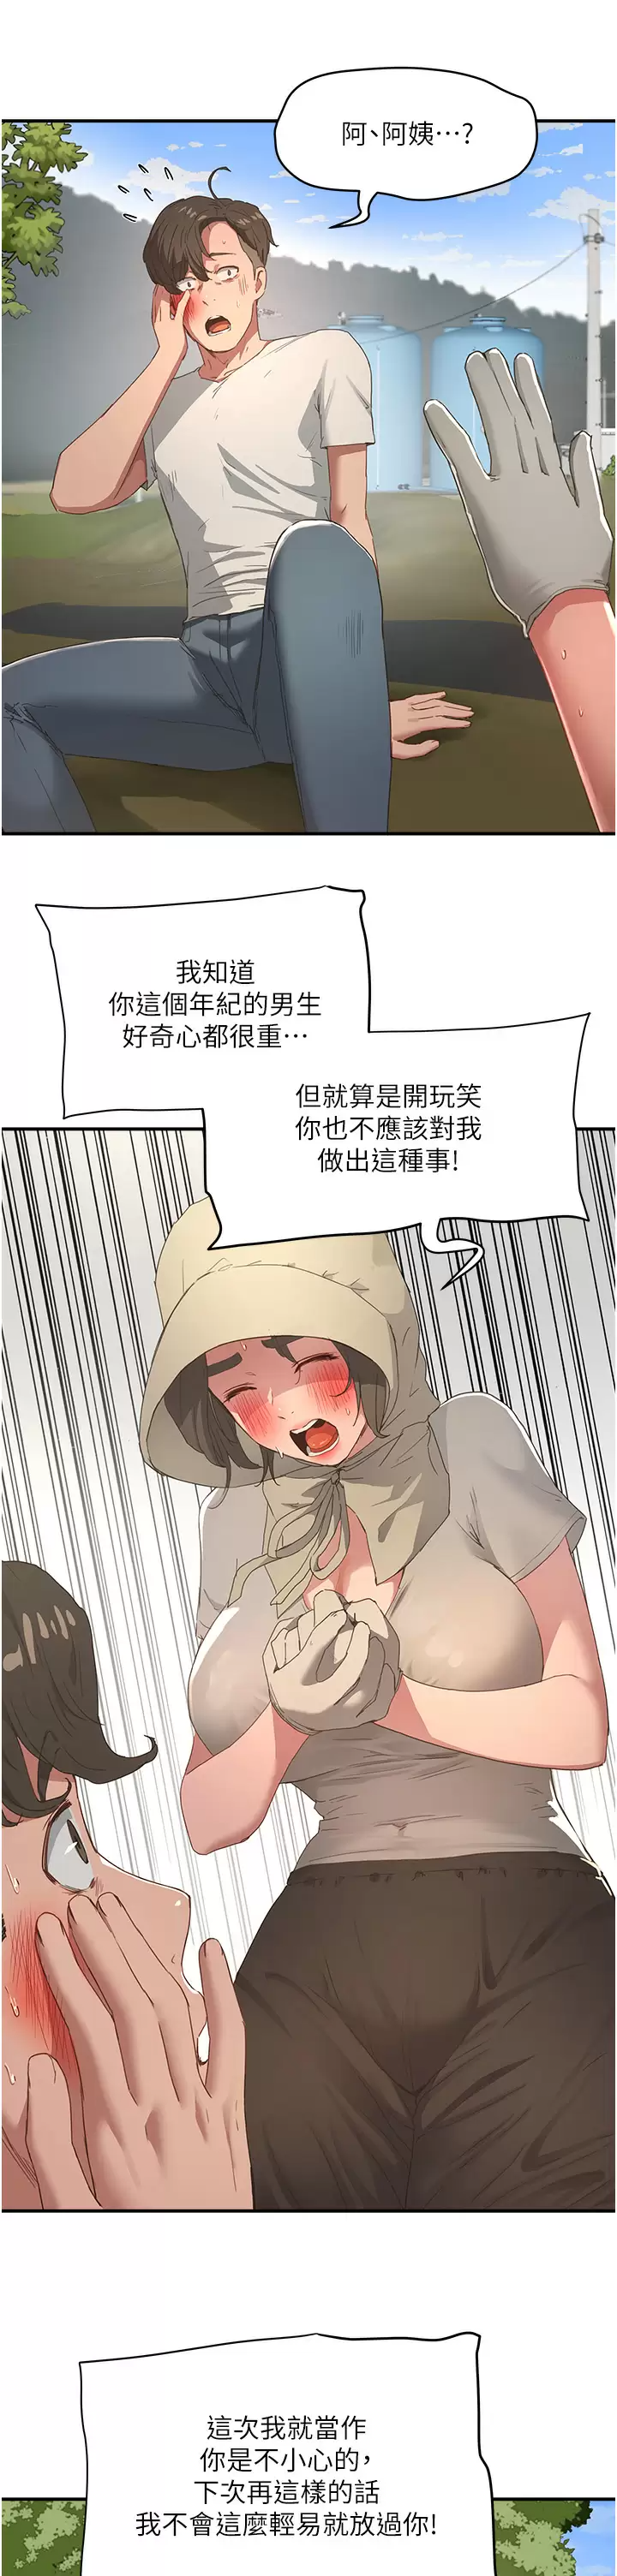 韩国污漫画 夏日深處 第28话 诱人的丰臀与湿透的秘穴 13